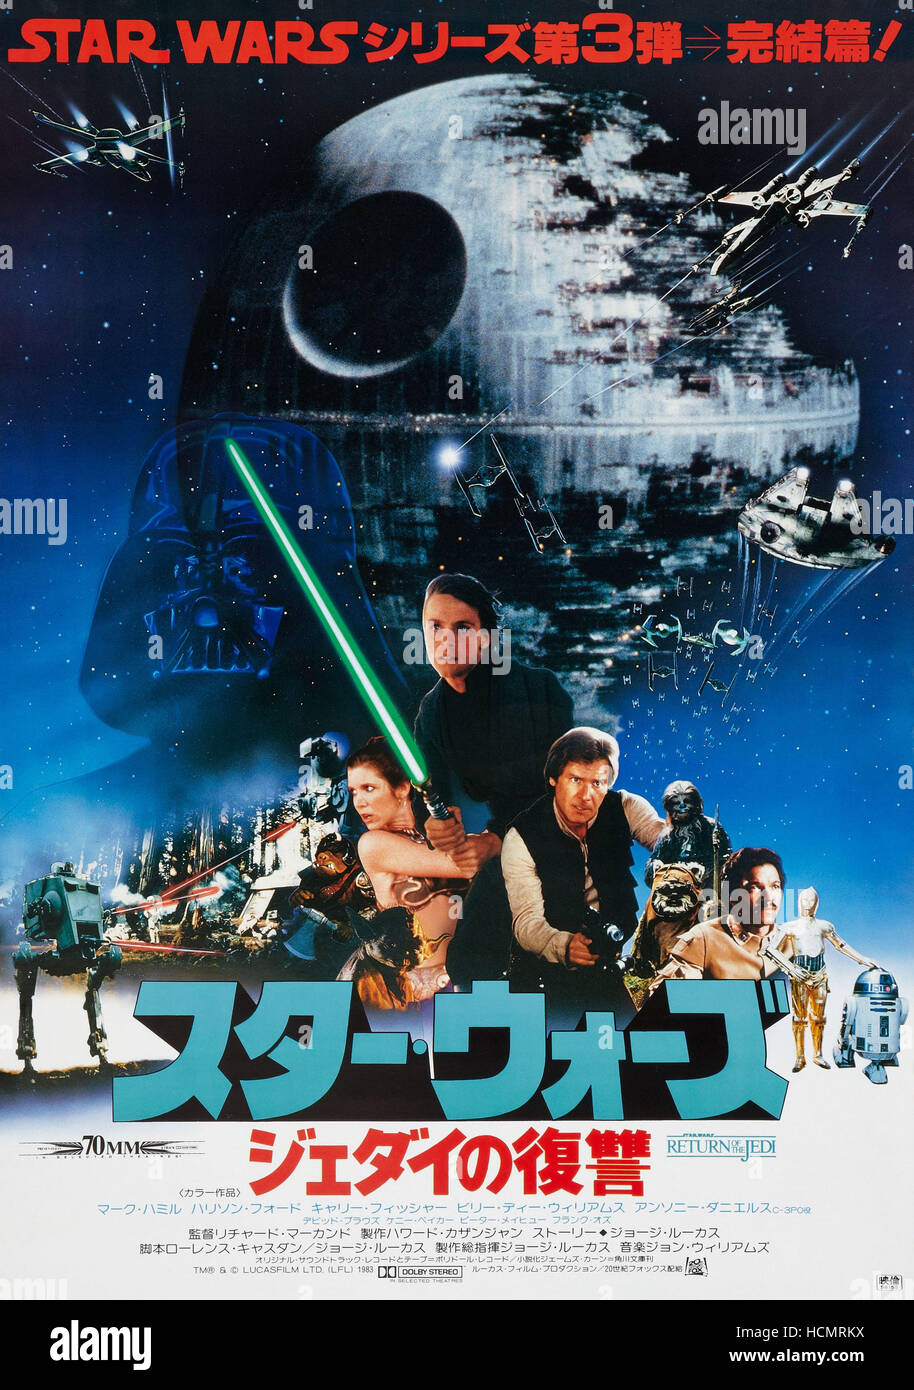 Poster Star Wars Episodio VI El Retorno del Jedi